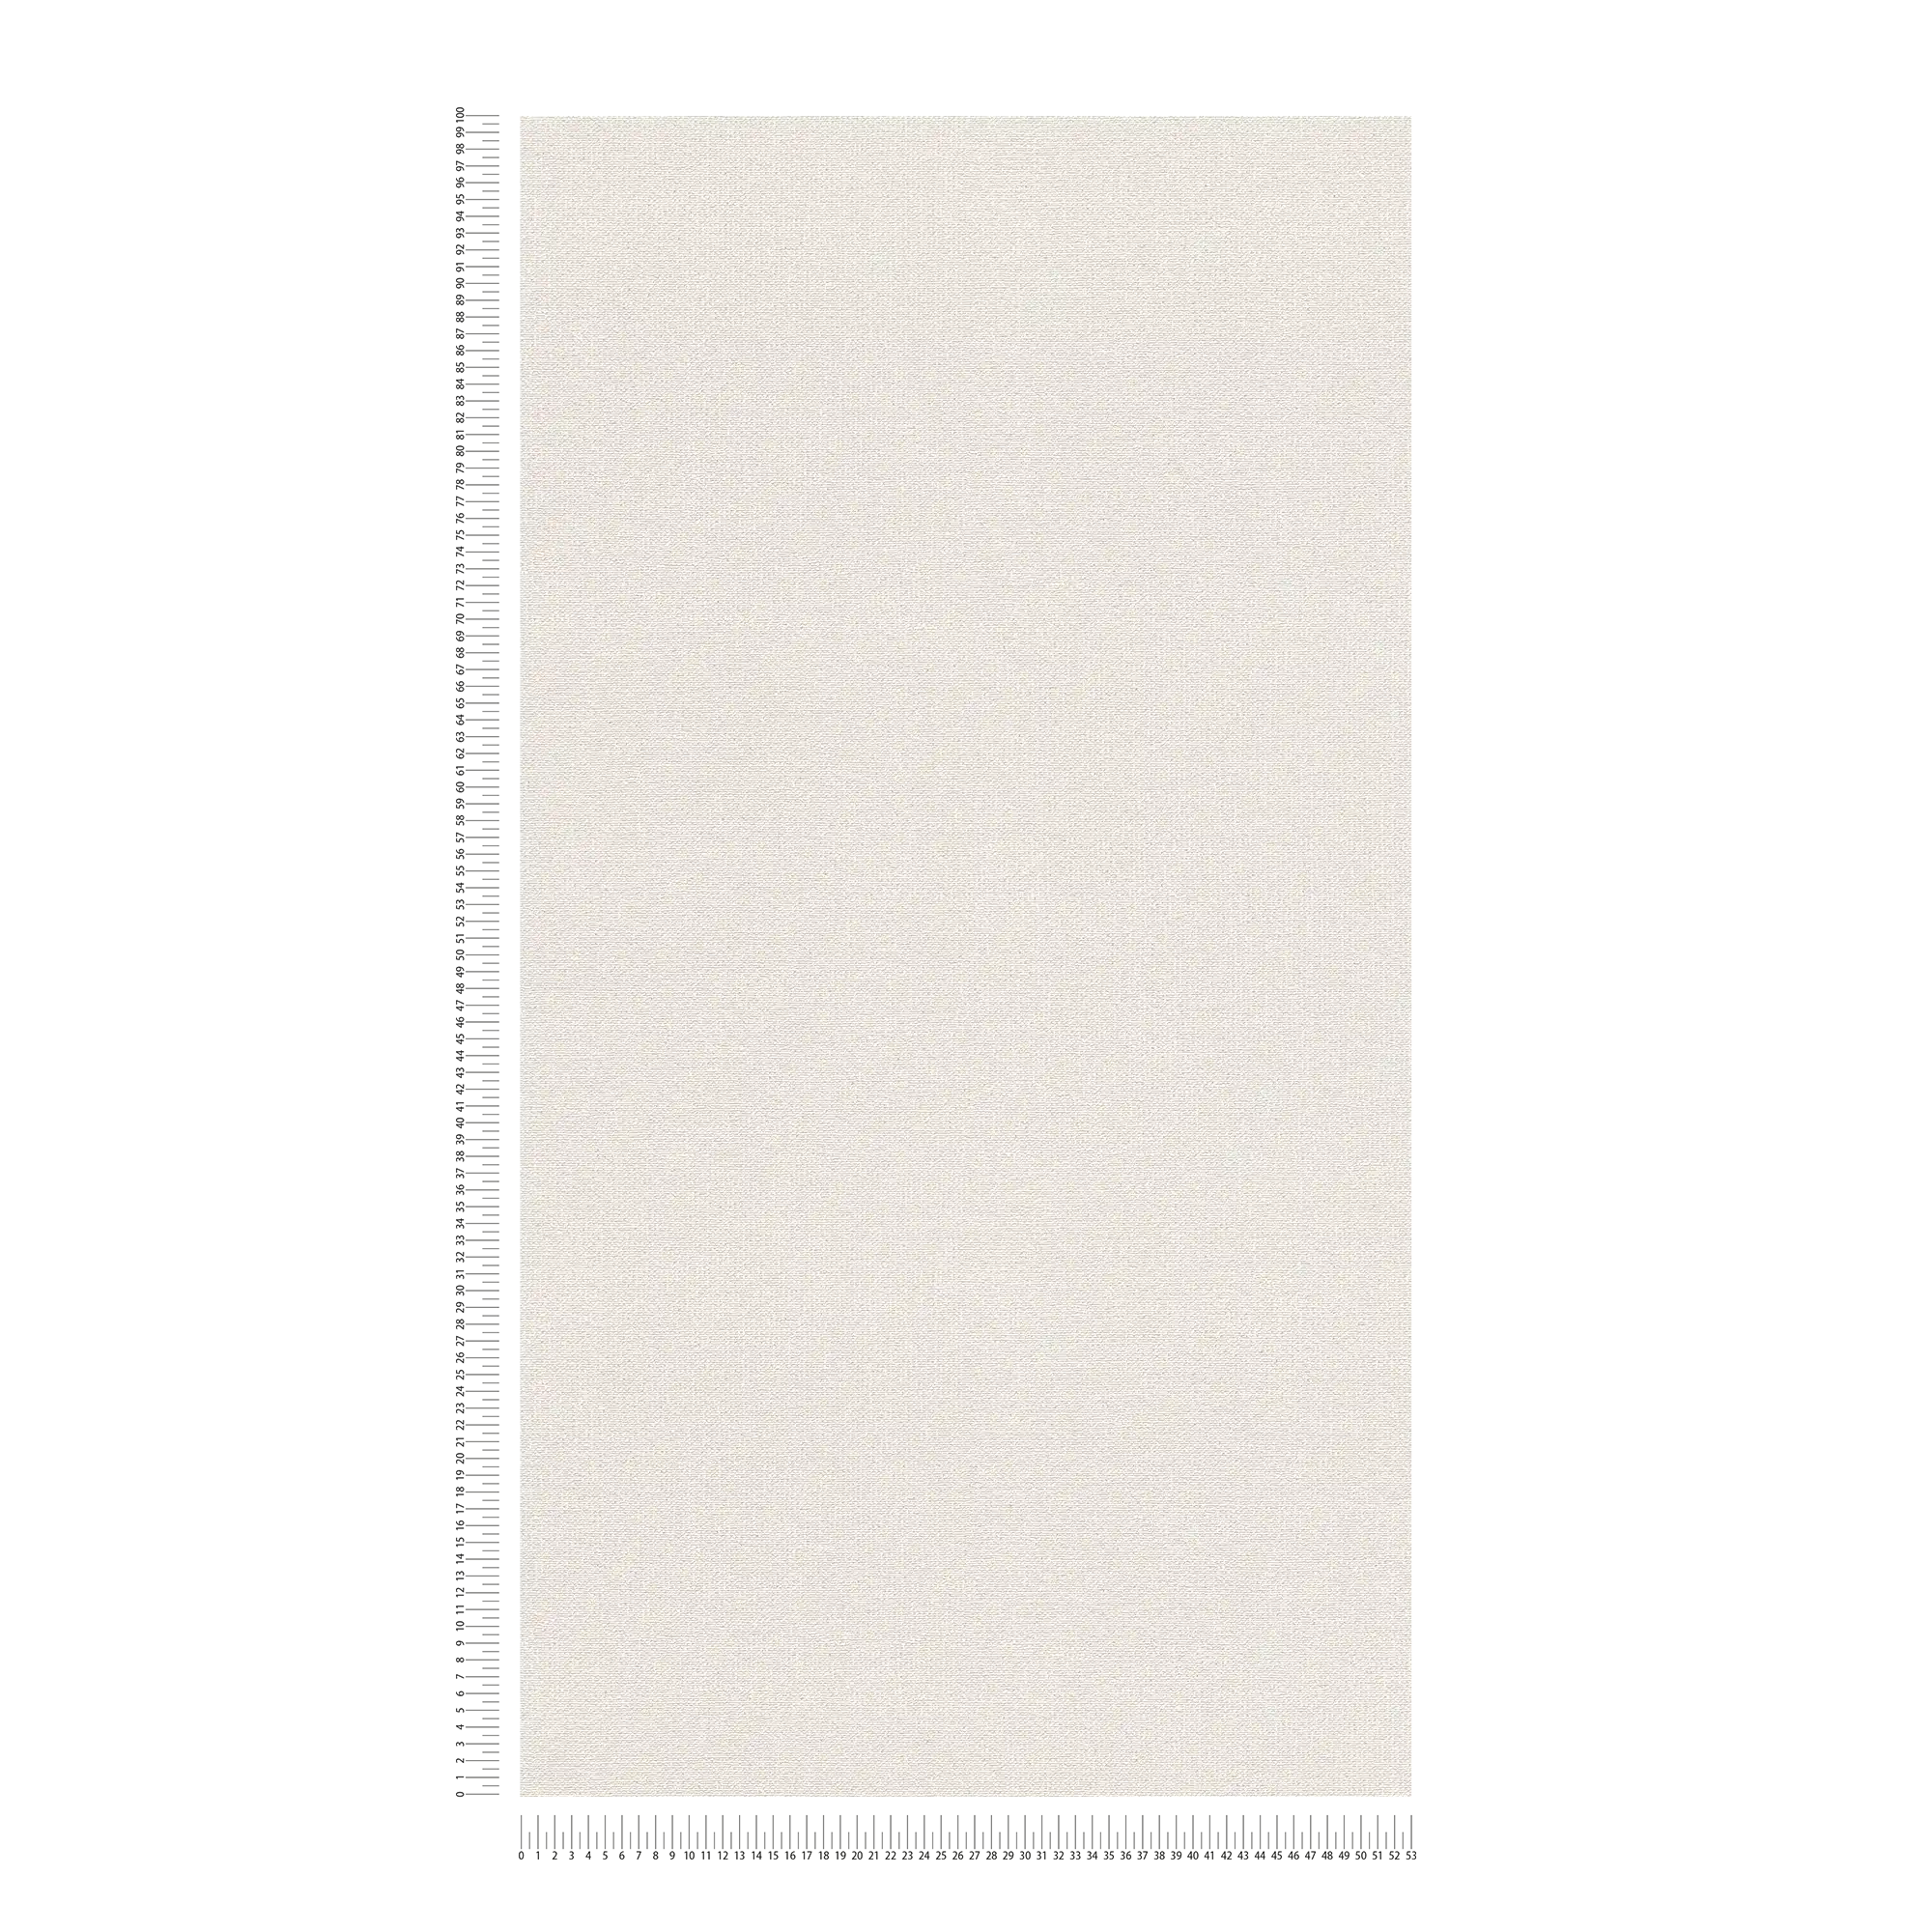             Papier peint intissé mat à structure aspect lin - blanc, crème
        